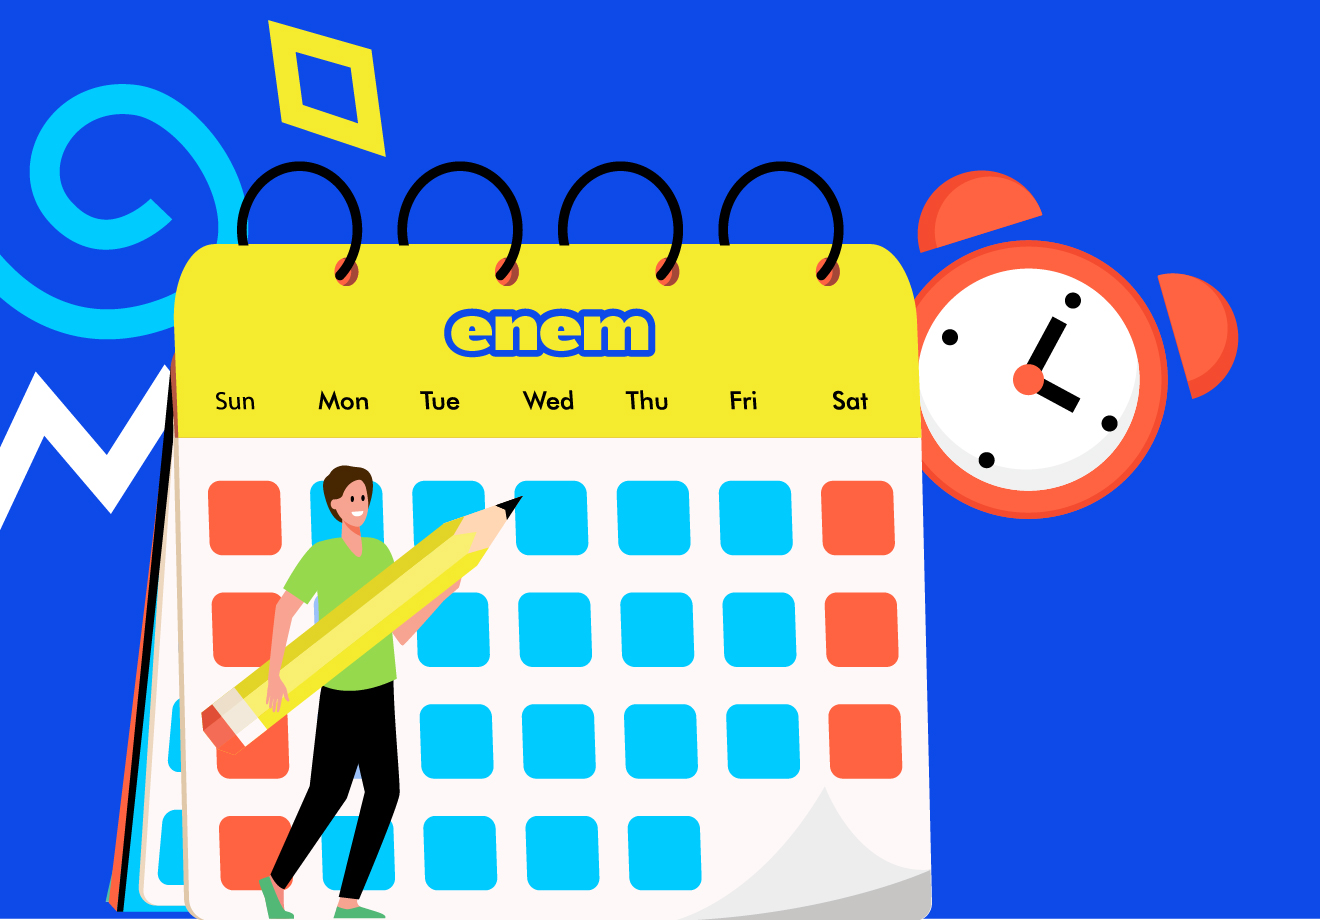 Ilustra de um jovem preenchendo um calendário do Enem e um relógio na parte de trás